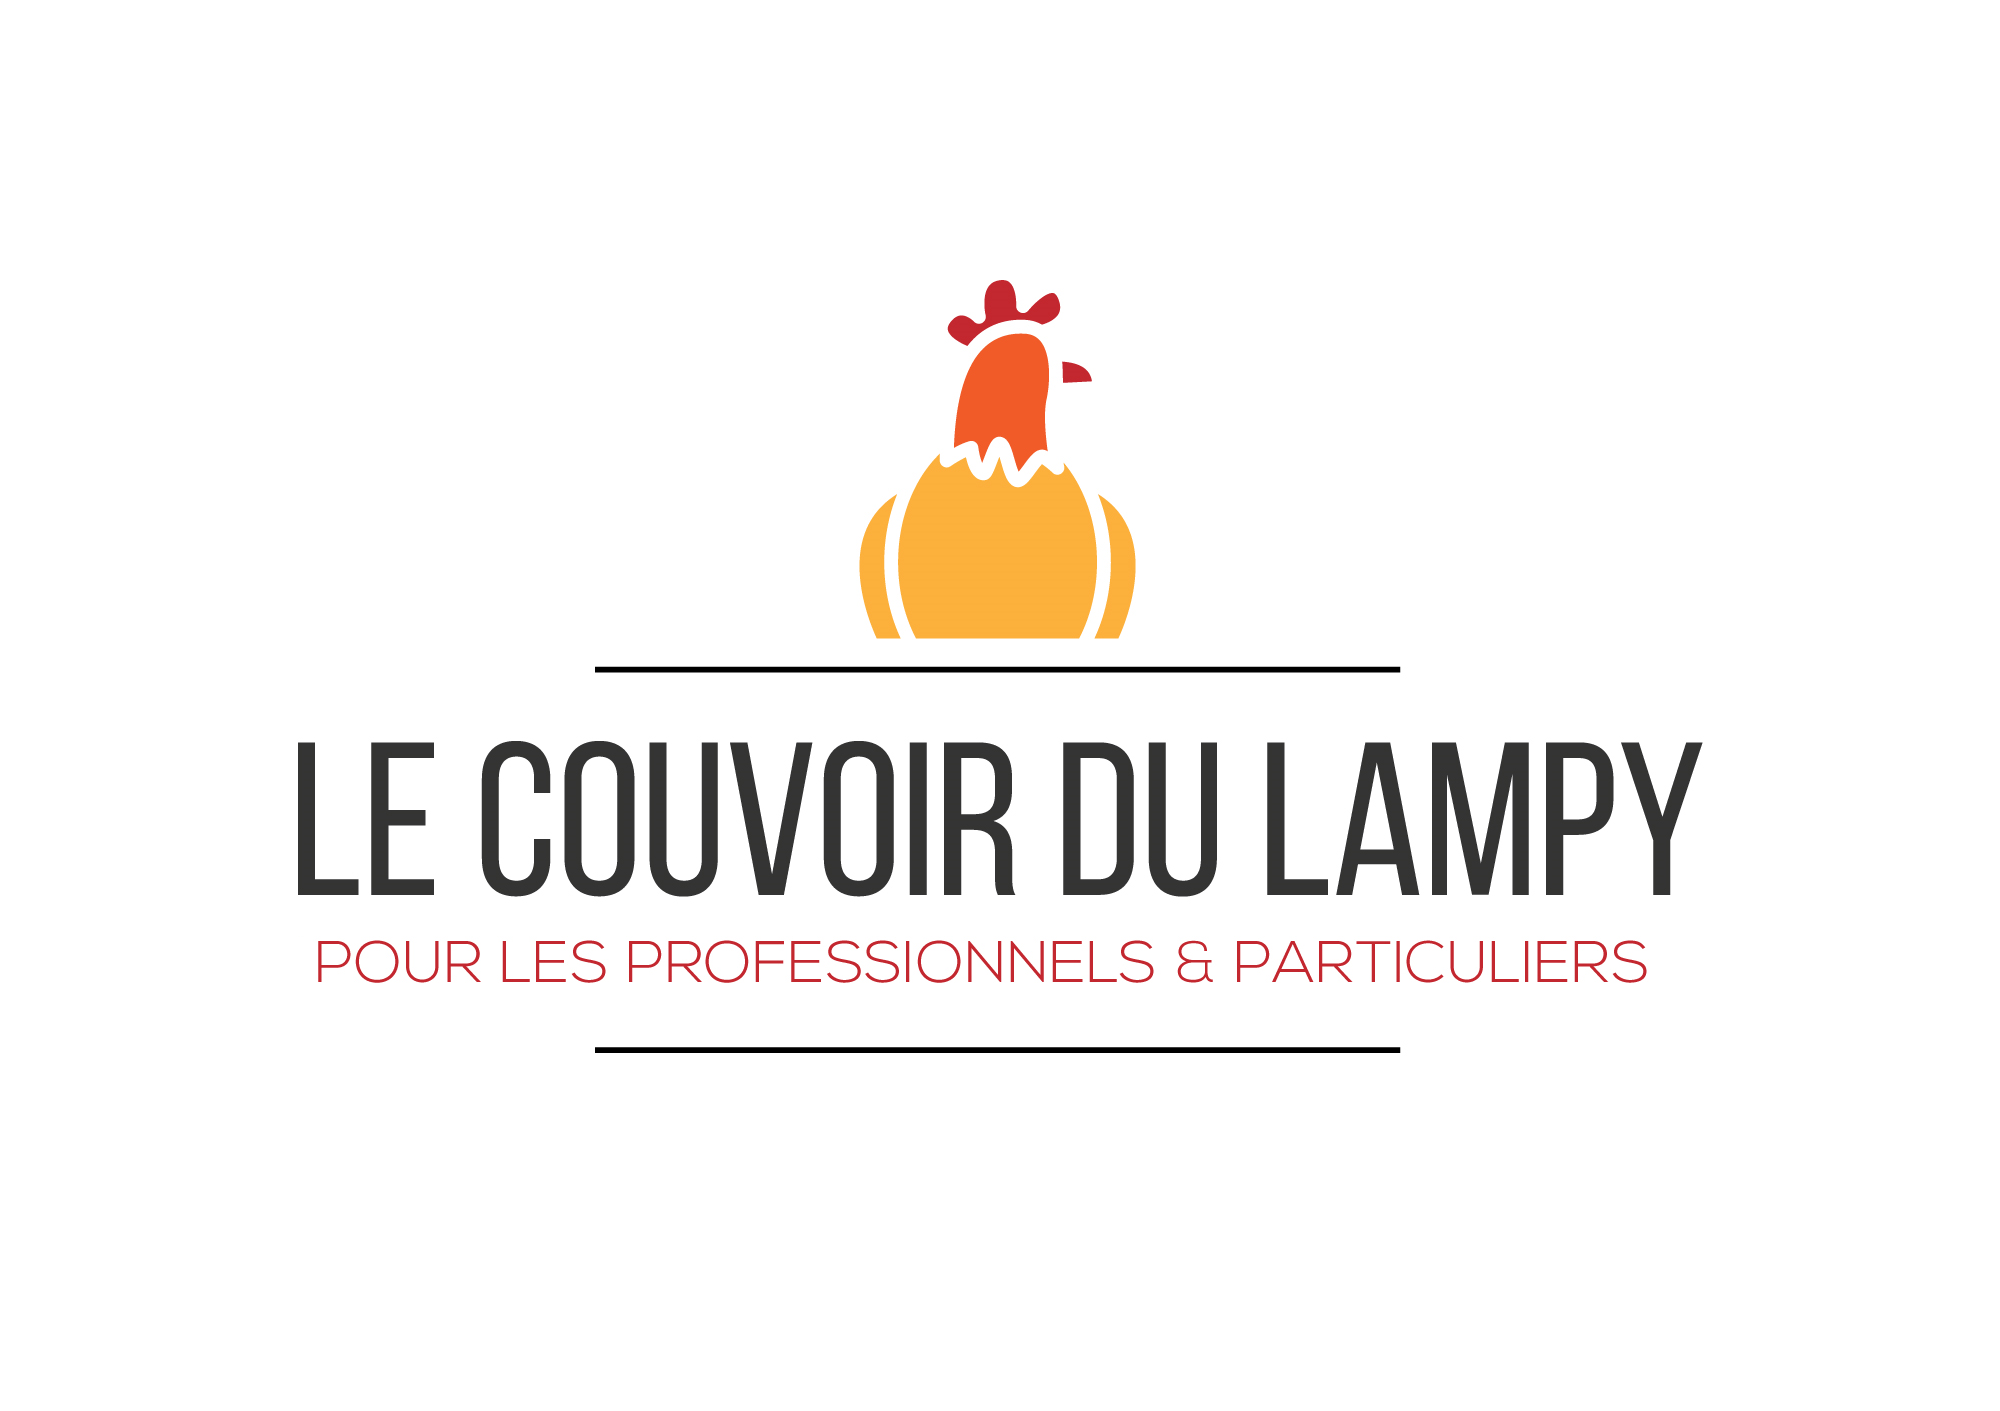 Le Couvoir du Lampy